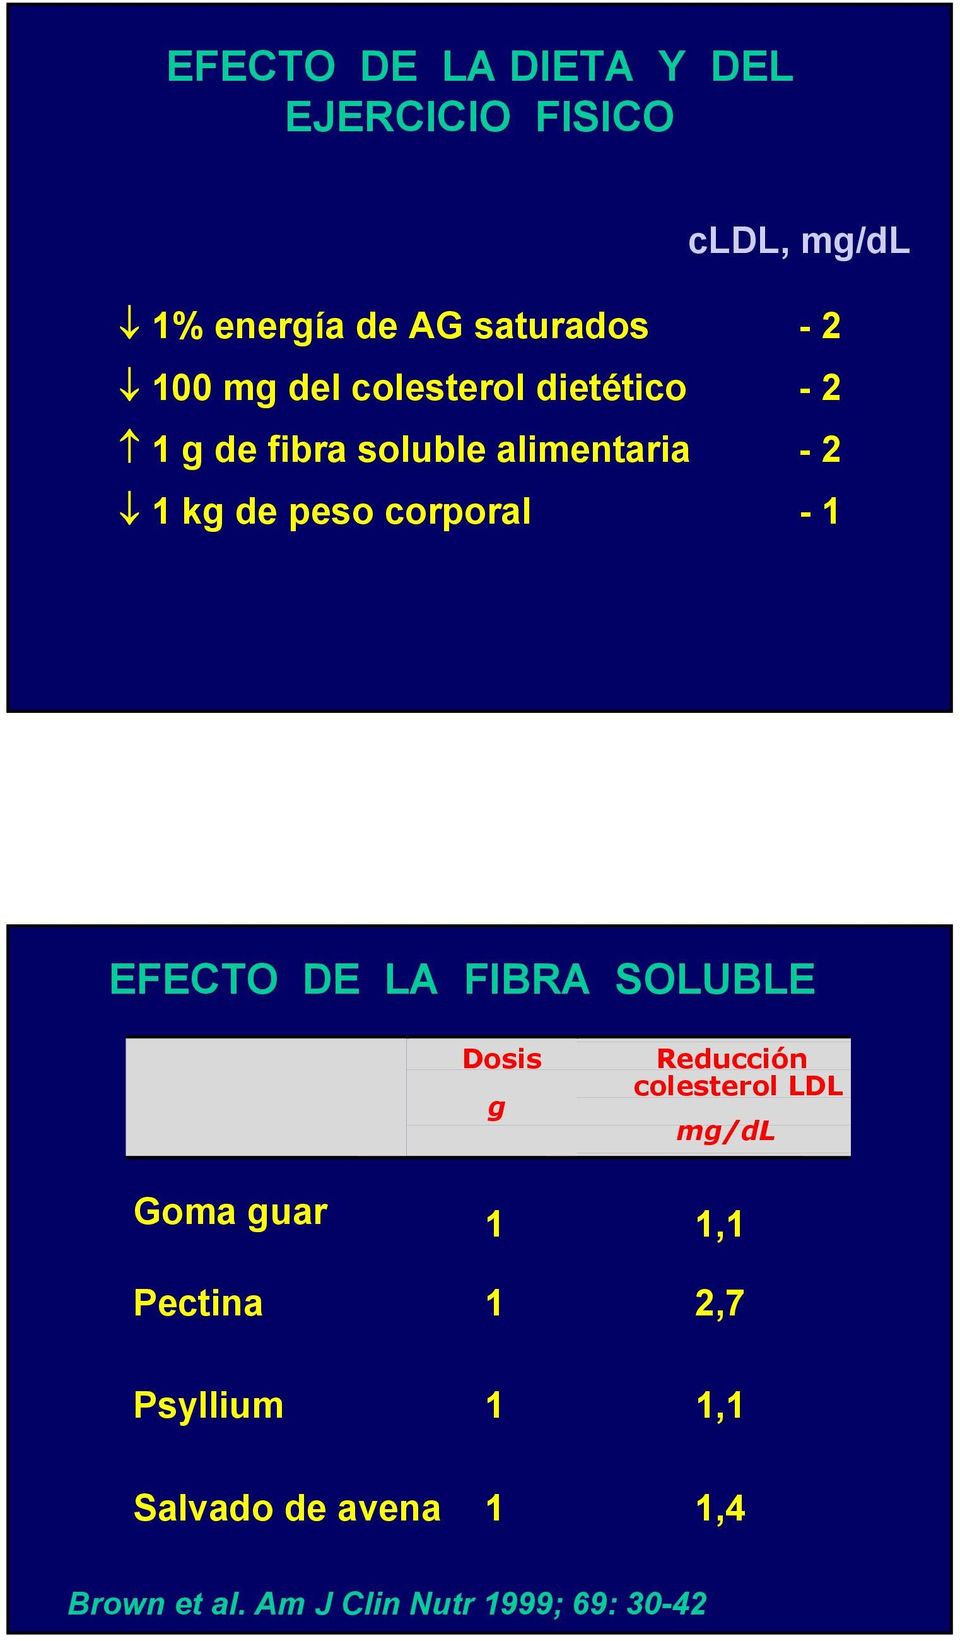 - 1 EFECTO DE LA FIBRA SOLUBLE Dosis g Reducción colesterol LDL mg/dl Goma guar 1 1,1